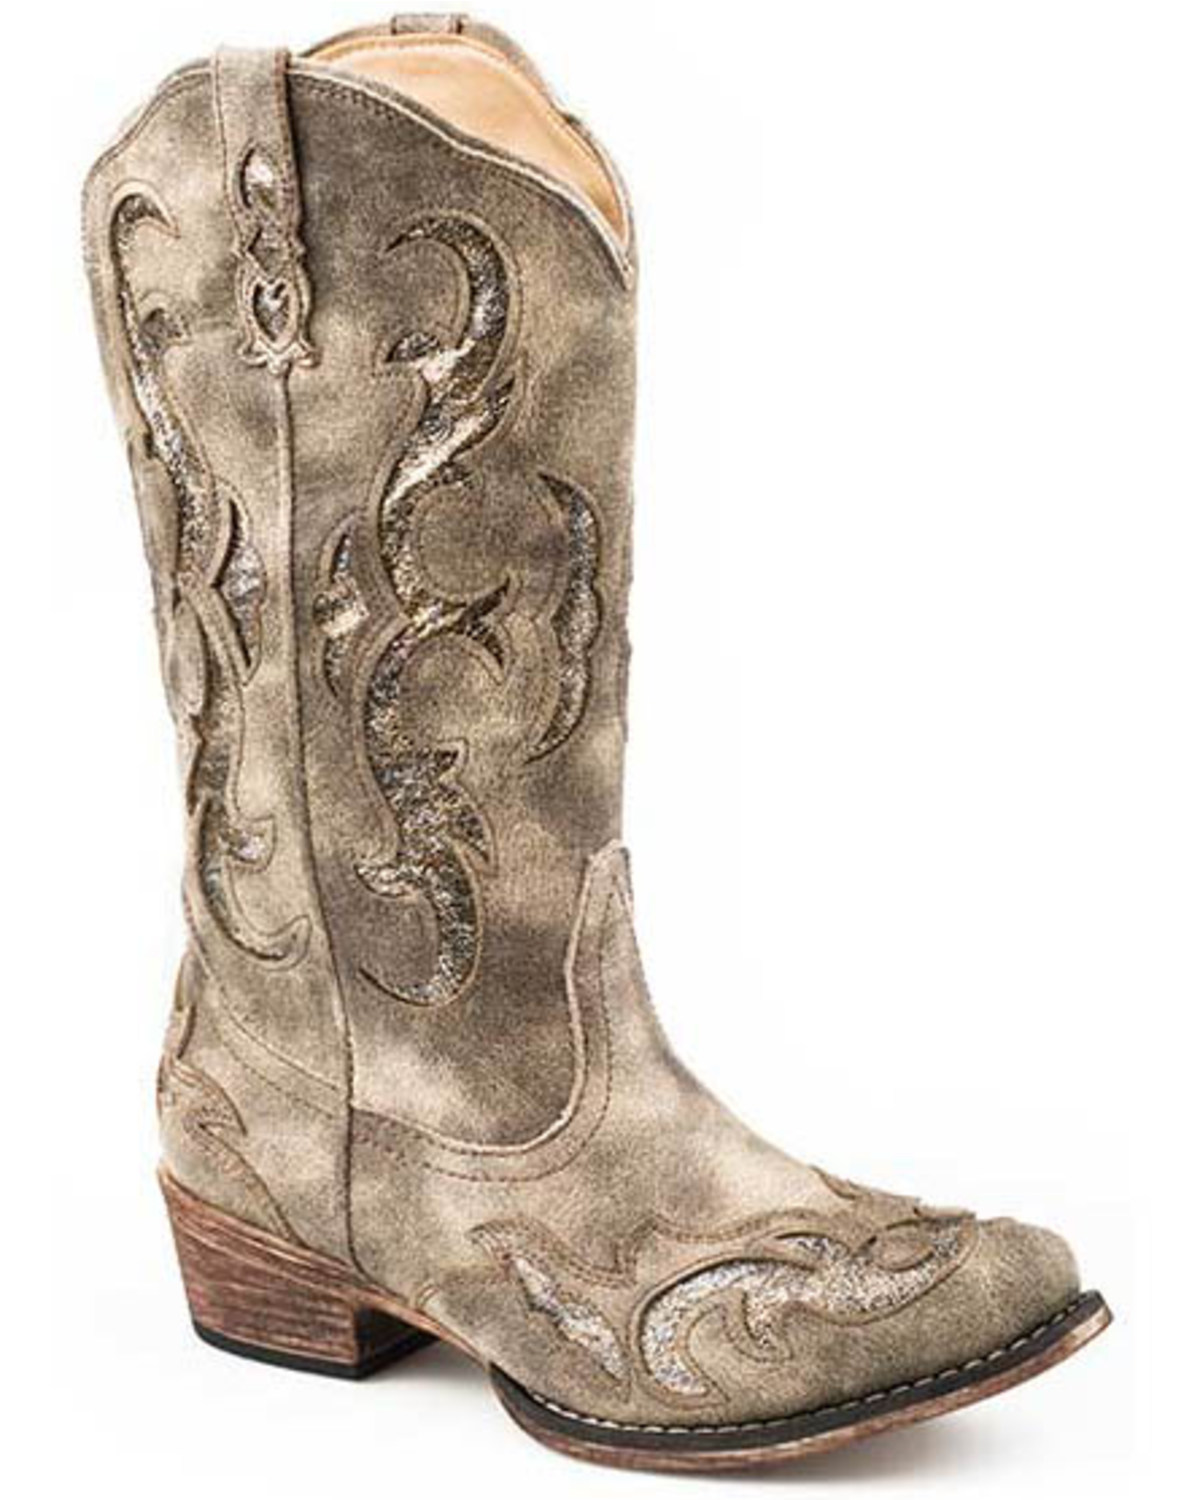 roper women's riley western boot